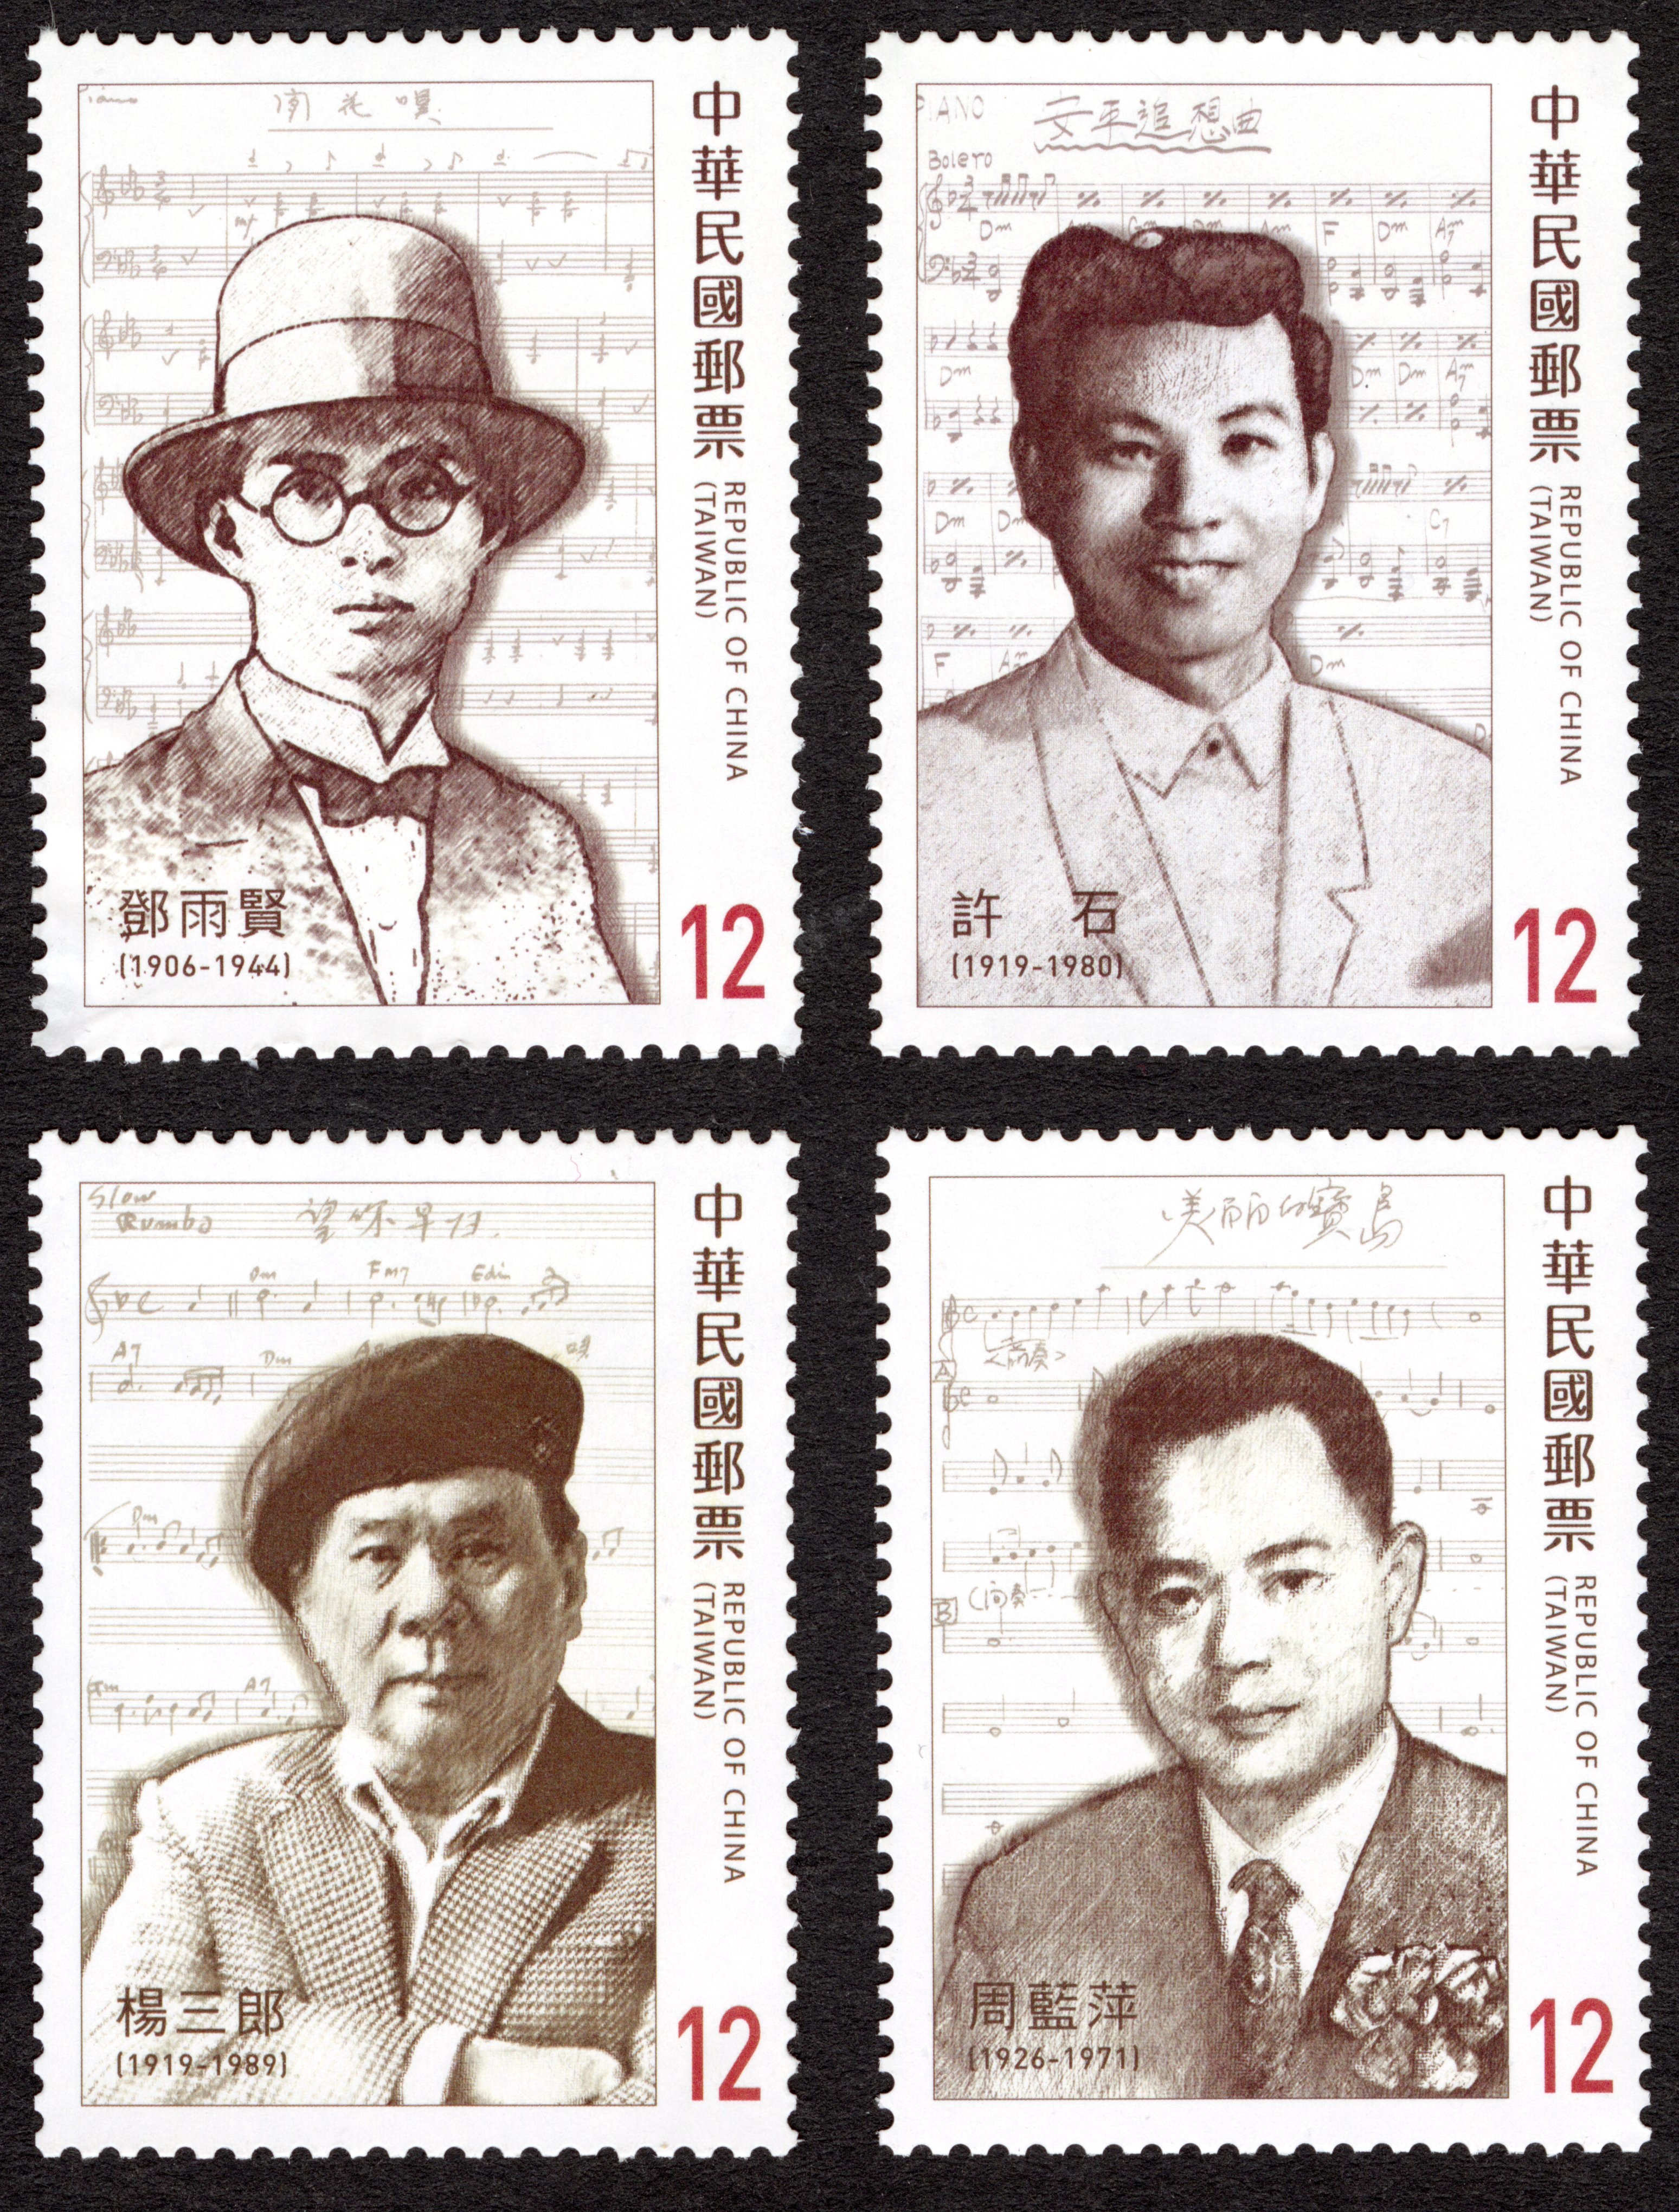 111年第3季發行郵票計畫